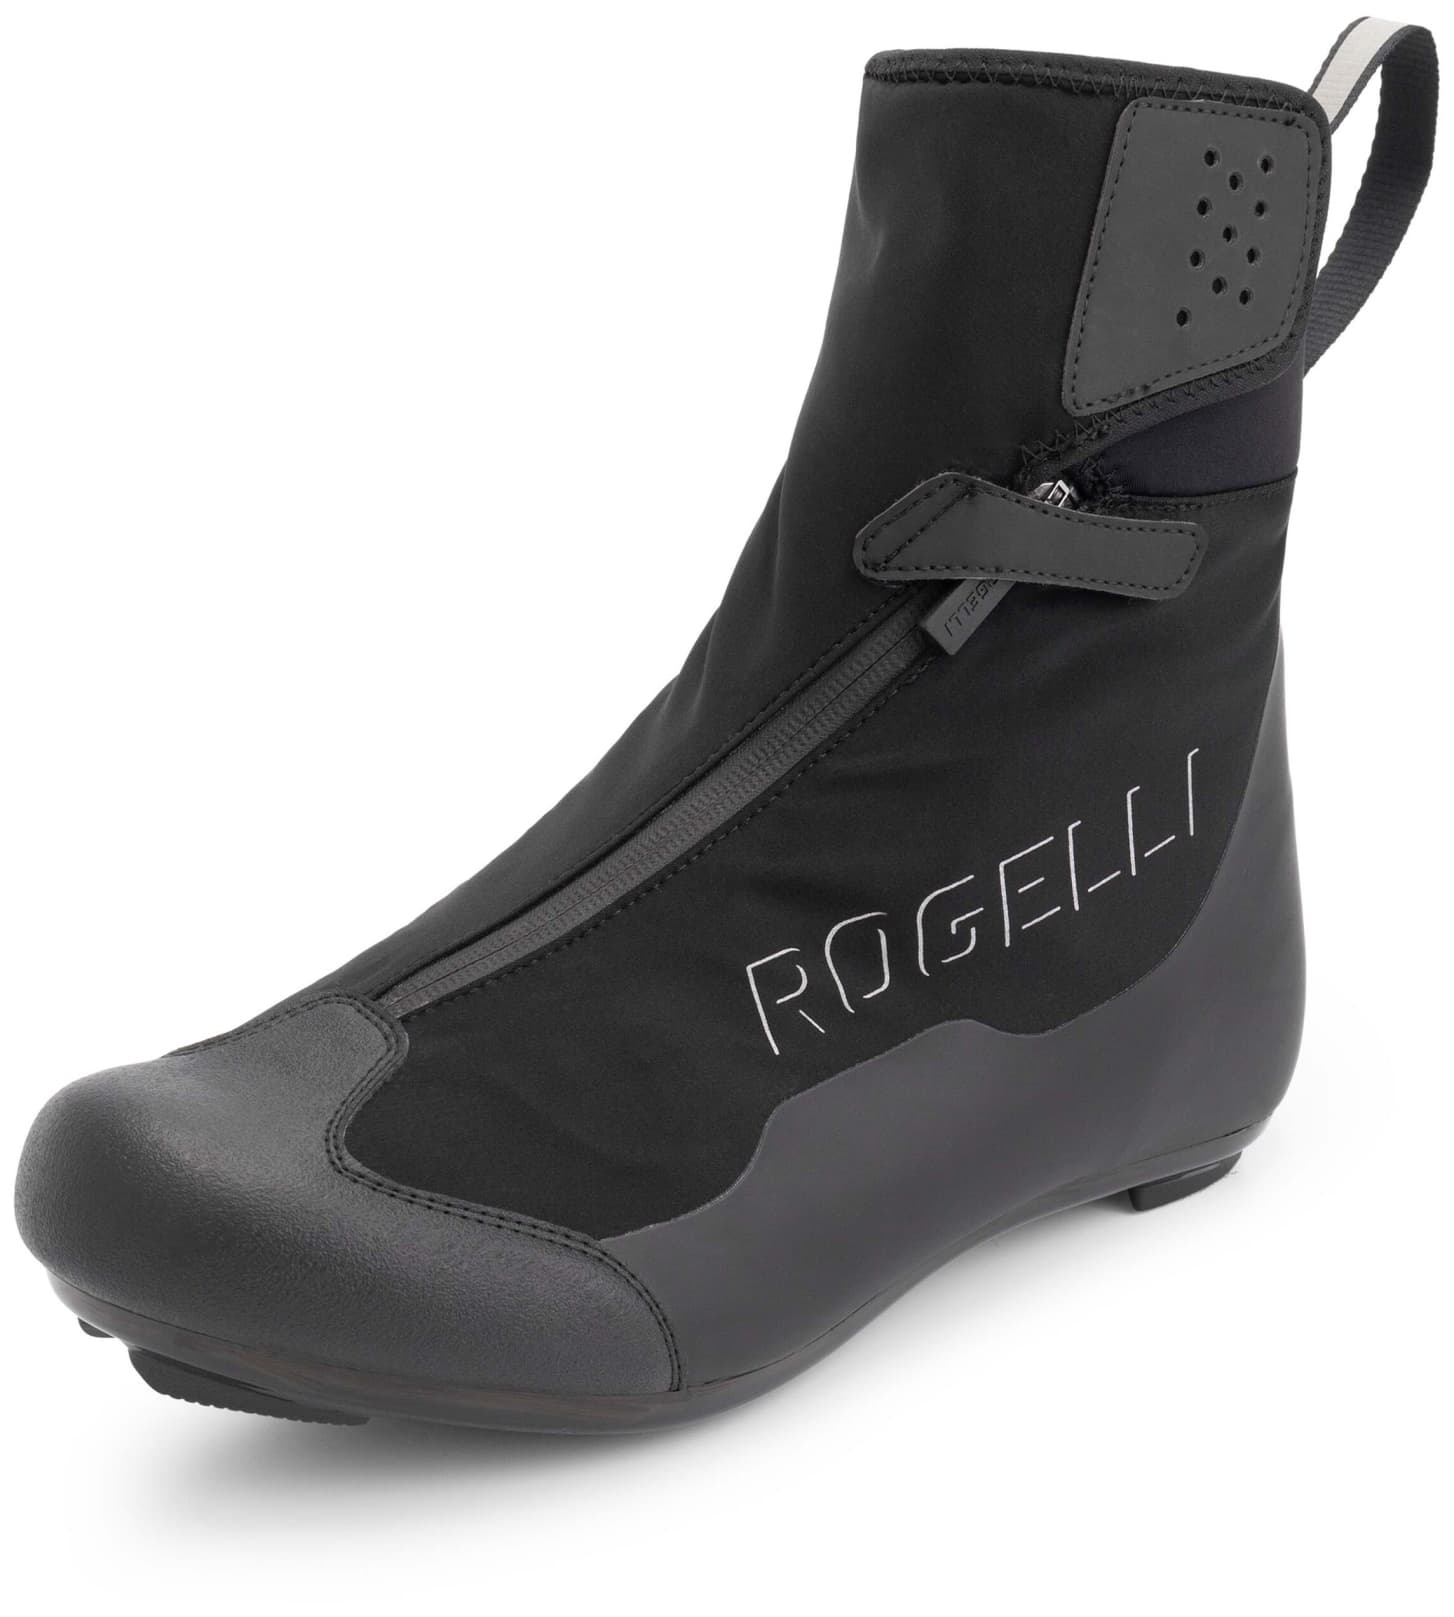 ROGELLI ARTIC R-1000 zimné cyklistické tretry, cestné, čierne Veľkosť: 38,ROG352052X